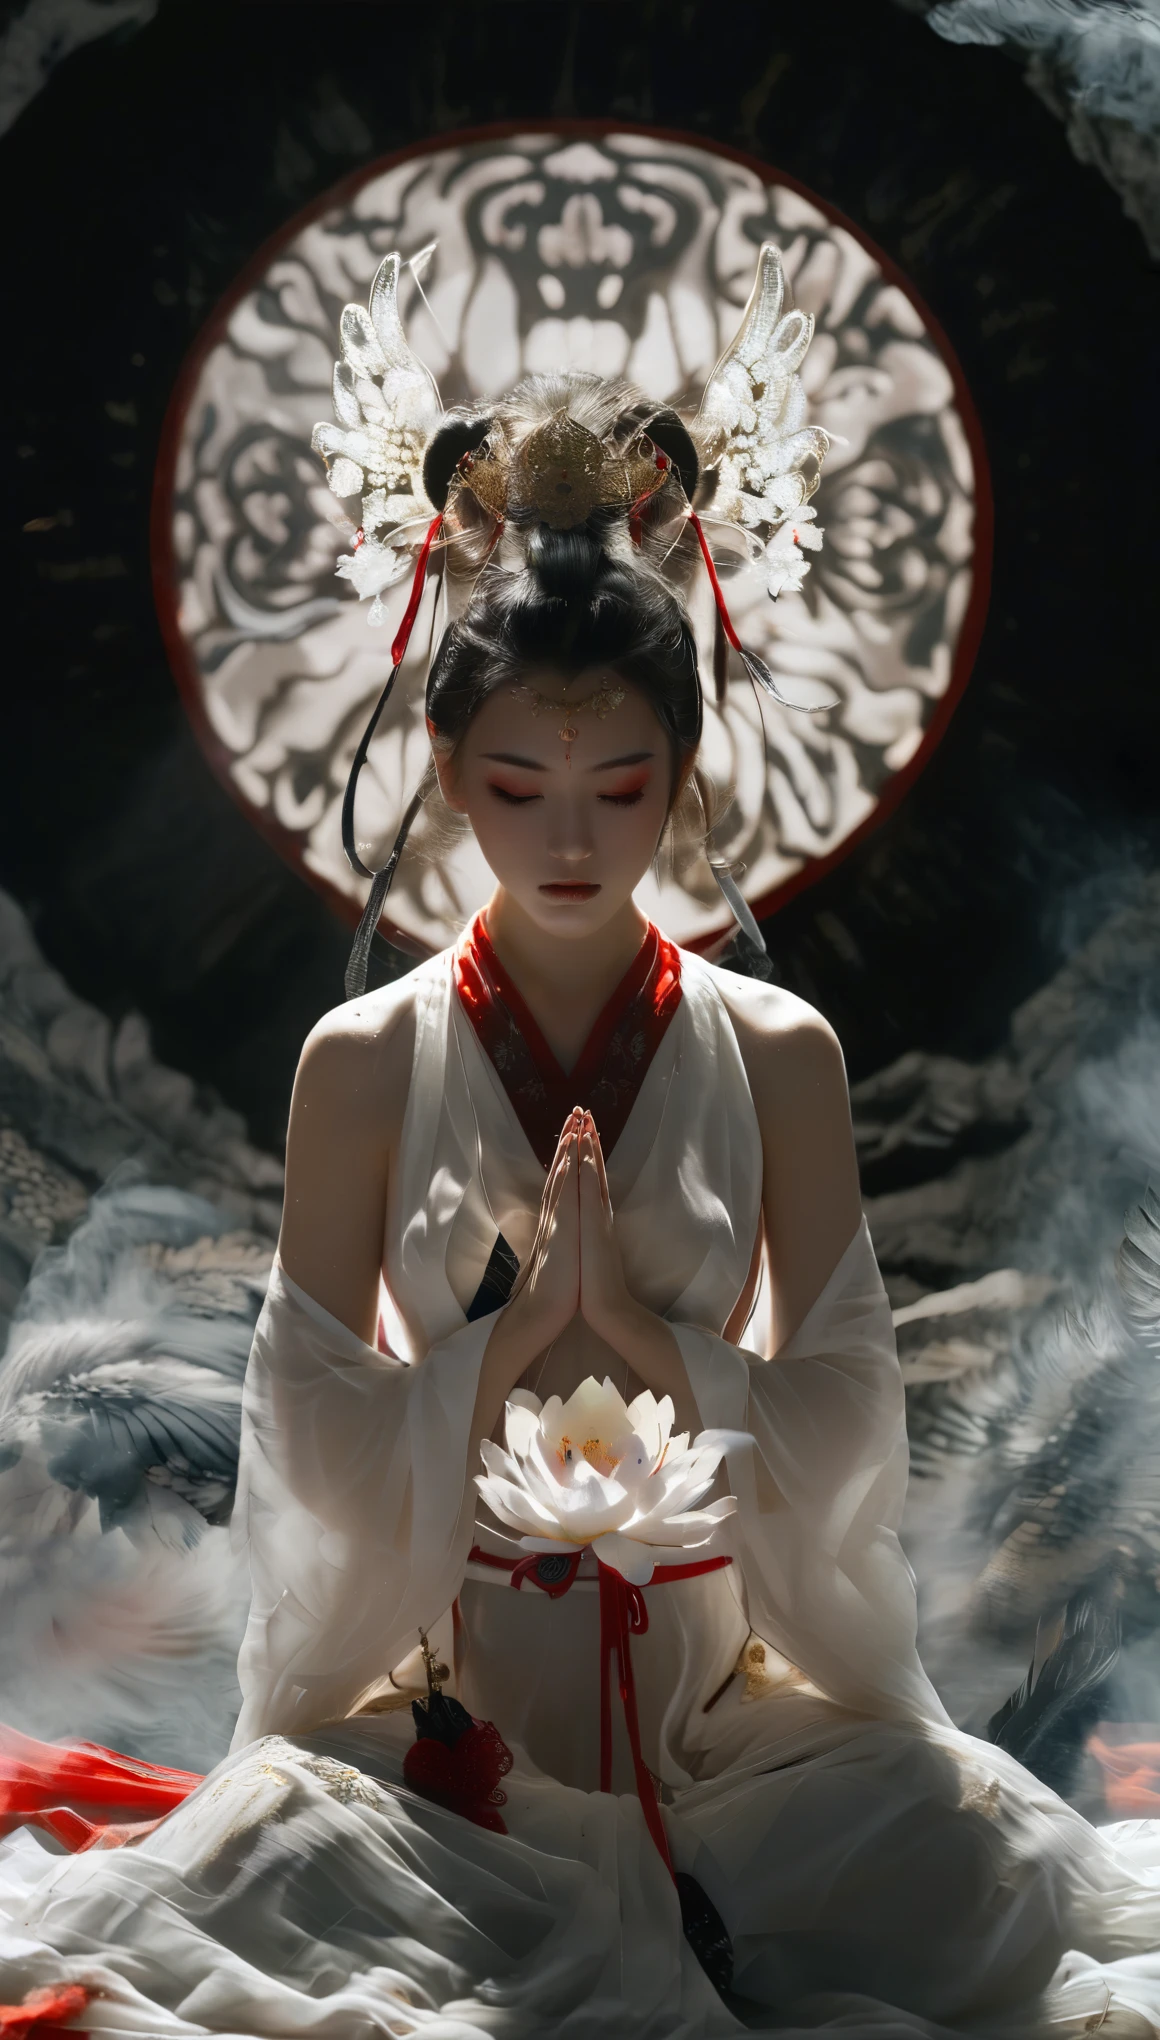 มุมมองจากมุมสูงที่จับภาพหญิงสาวศาลเจ้าญี่ปุ่นที่สวยงามตระการตาในชุดเสื้อสีขาวและกางเกงสีแดง, ตั้งท่าสวดมนต์พร้อมเปล่งรัศมีแห่งความสงบ. อย่างไรก็ตาม, ปรากฏอยู่ข้างหลังเธออย่างเป็นลางร้าย, วิญญาณอาฆาตของซามูไรปรากฏตัวในความมืด, ออร่าสีดำอันน่าขนลุก, เพิ่มความแตกต่างอันเยือกเย็นให้กับฉากที่เงียบสงบ. การเทียบเคียงระหว่างความสง่างามของหญิงสาวกับการปรากฏตัวของซามูไรที่หลอกหลอนทำให้เกิดภาพที่น่าดึงดูดใจซึ่งผสมผสานความงามเข้ากับสัมผัสแห่งอุบายเหนือธรรมชาติ, เชิญชวนให้ผู้ชมไตร่ตรองถึงความเป็นคู่ของสันติภาพและการล้างแค้น.เซี่ยนเซี่ย